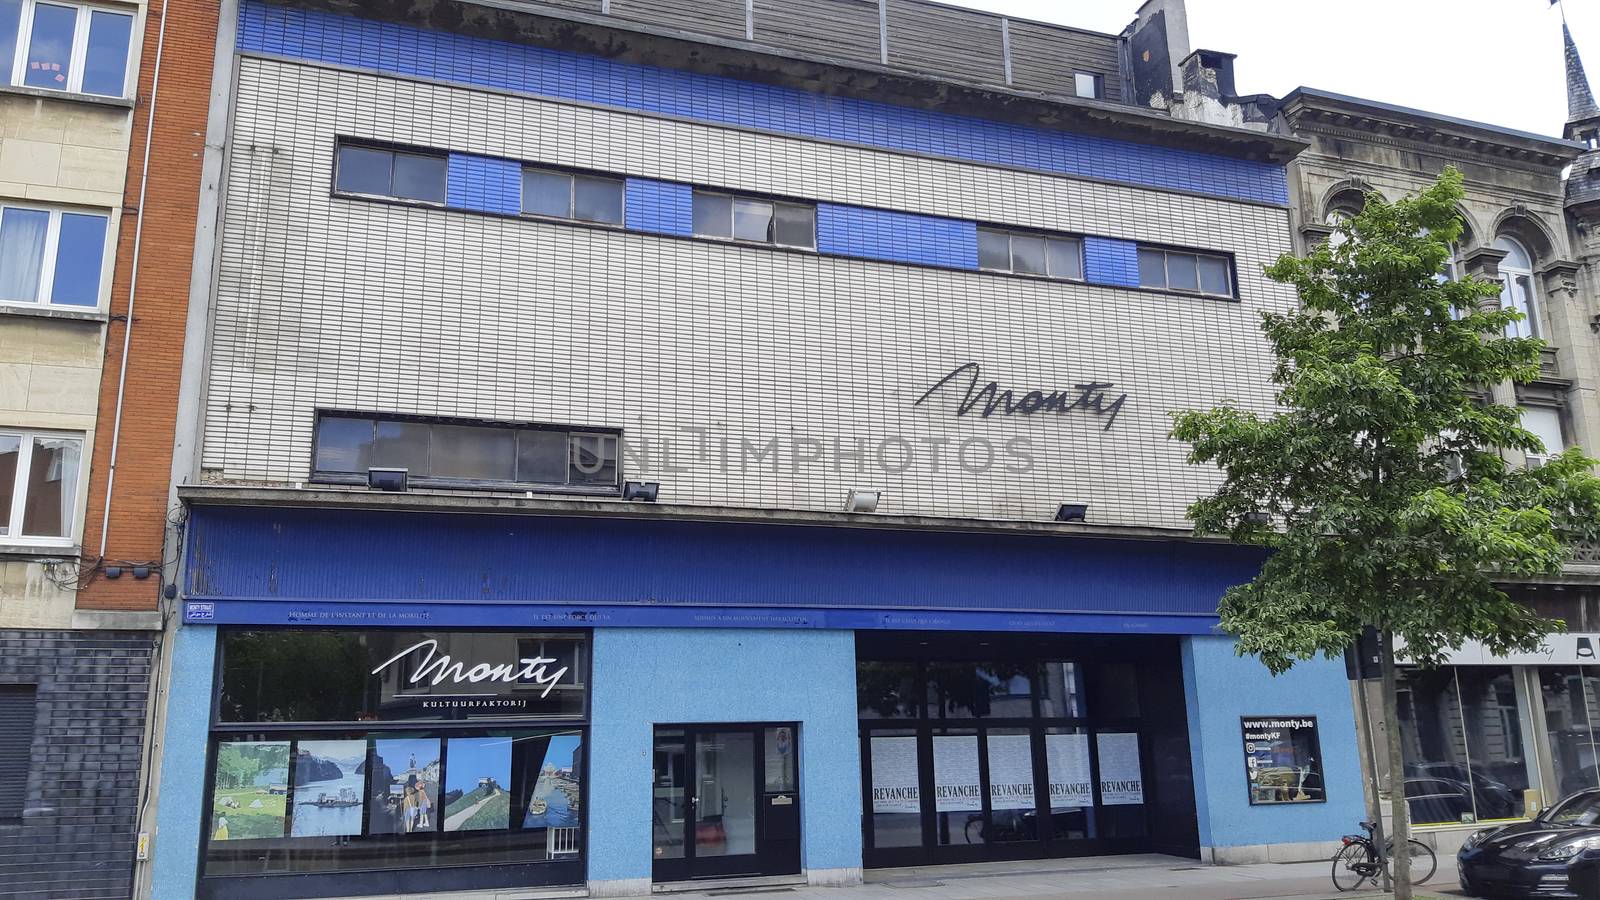 Antwerp, Belgium, July 2020: view on Monty theatre in the Montignystraat